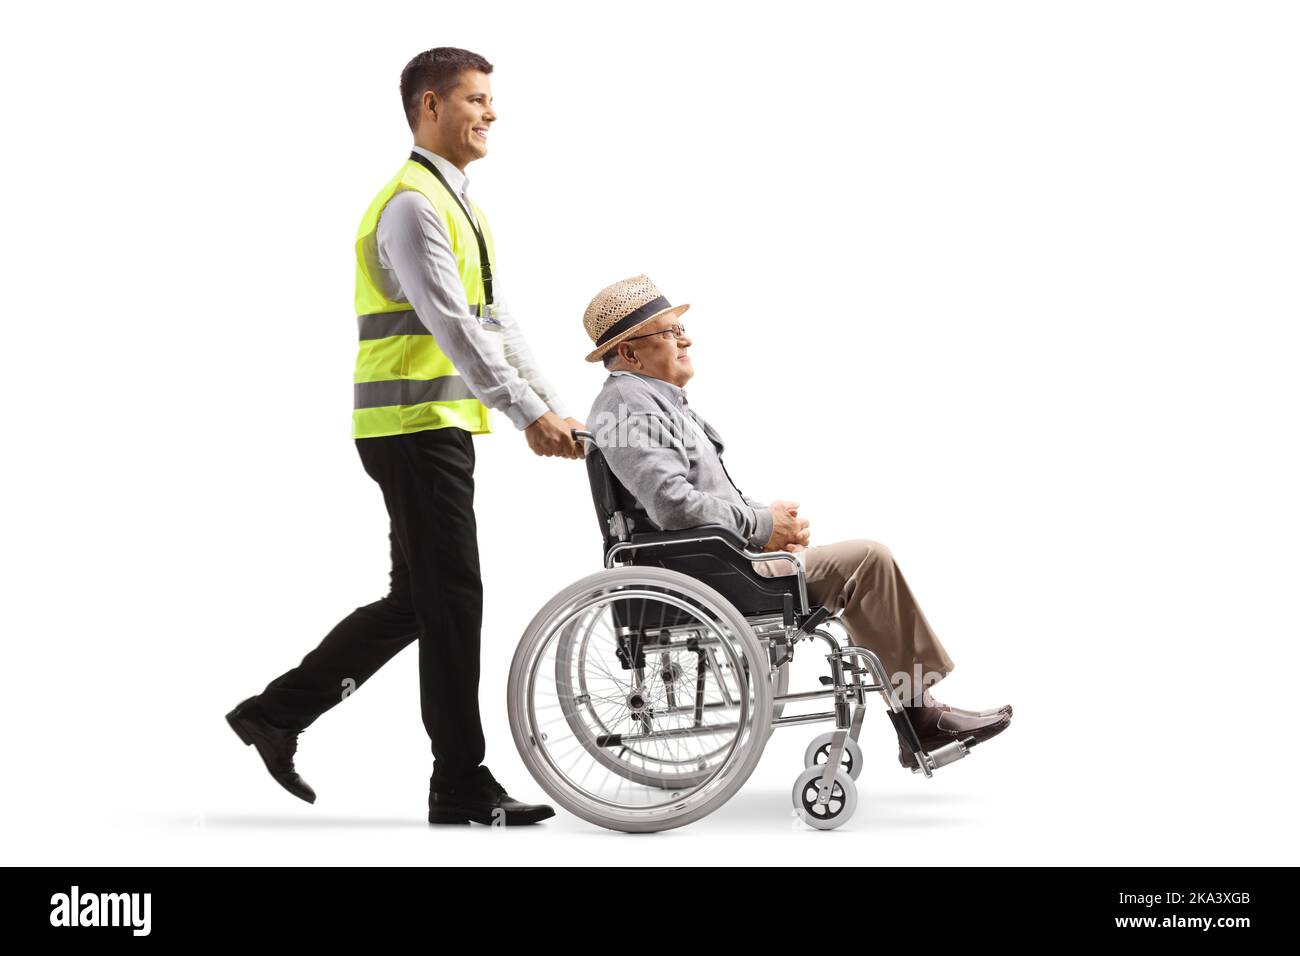 Ganzkörperaufnahme eines Flughafenarbeiters, der einen älteren Mann in einen Rollstuhl schiebt, isoliert auf weißem Hintergrund Stockfoto